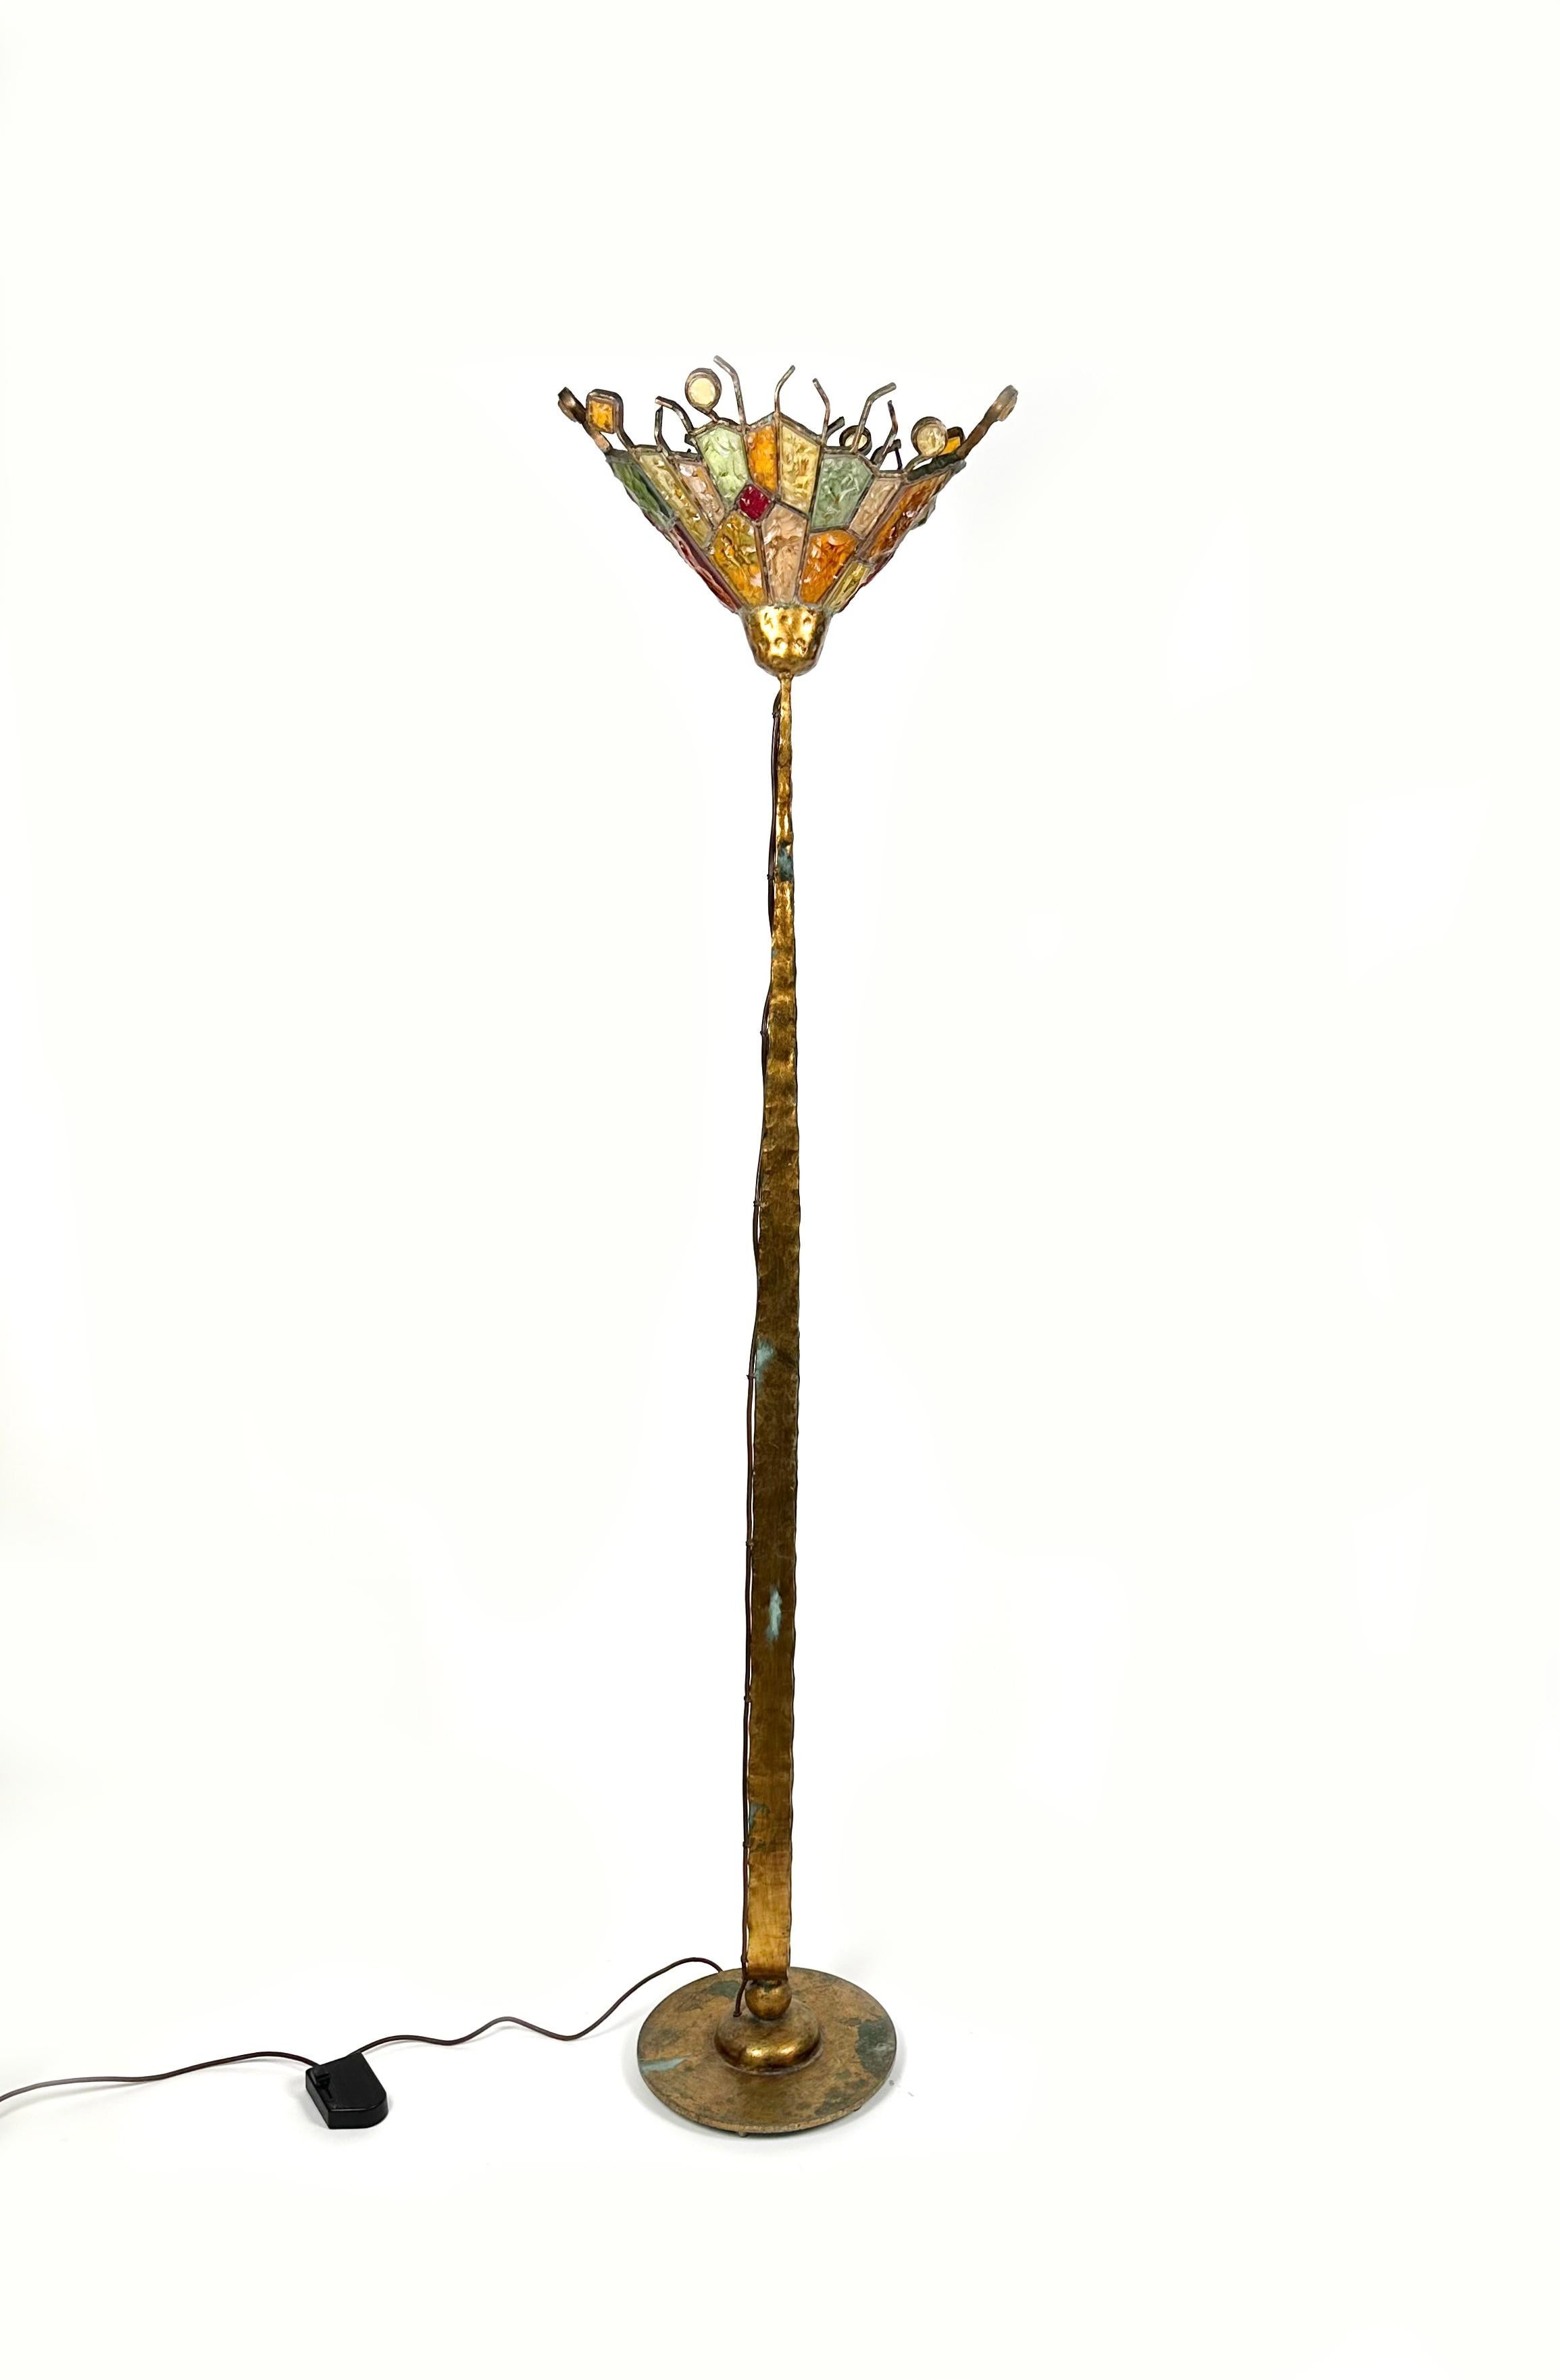 Étonnant lampadaire en fer doré et verre d'art coloré par Albano Poli pour Poliarte.

Fabriqué en Italie dans les années 1970.

Poliarte a été fondée par l'artiste Albano Poli en 1953, d'abord comme producteur de vitraux exceptionnels, puis